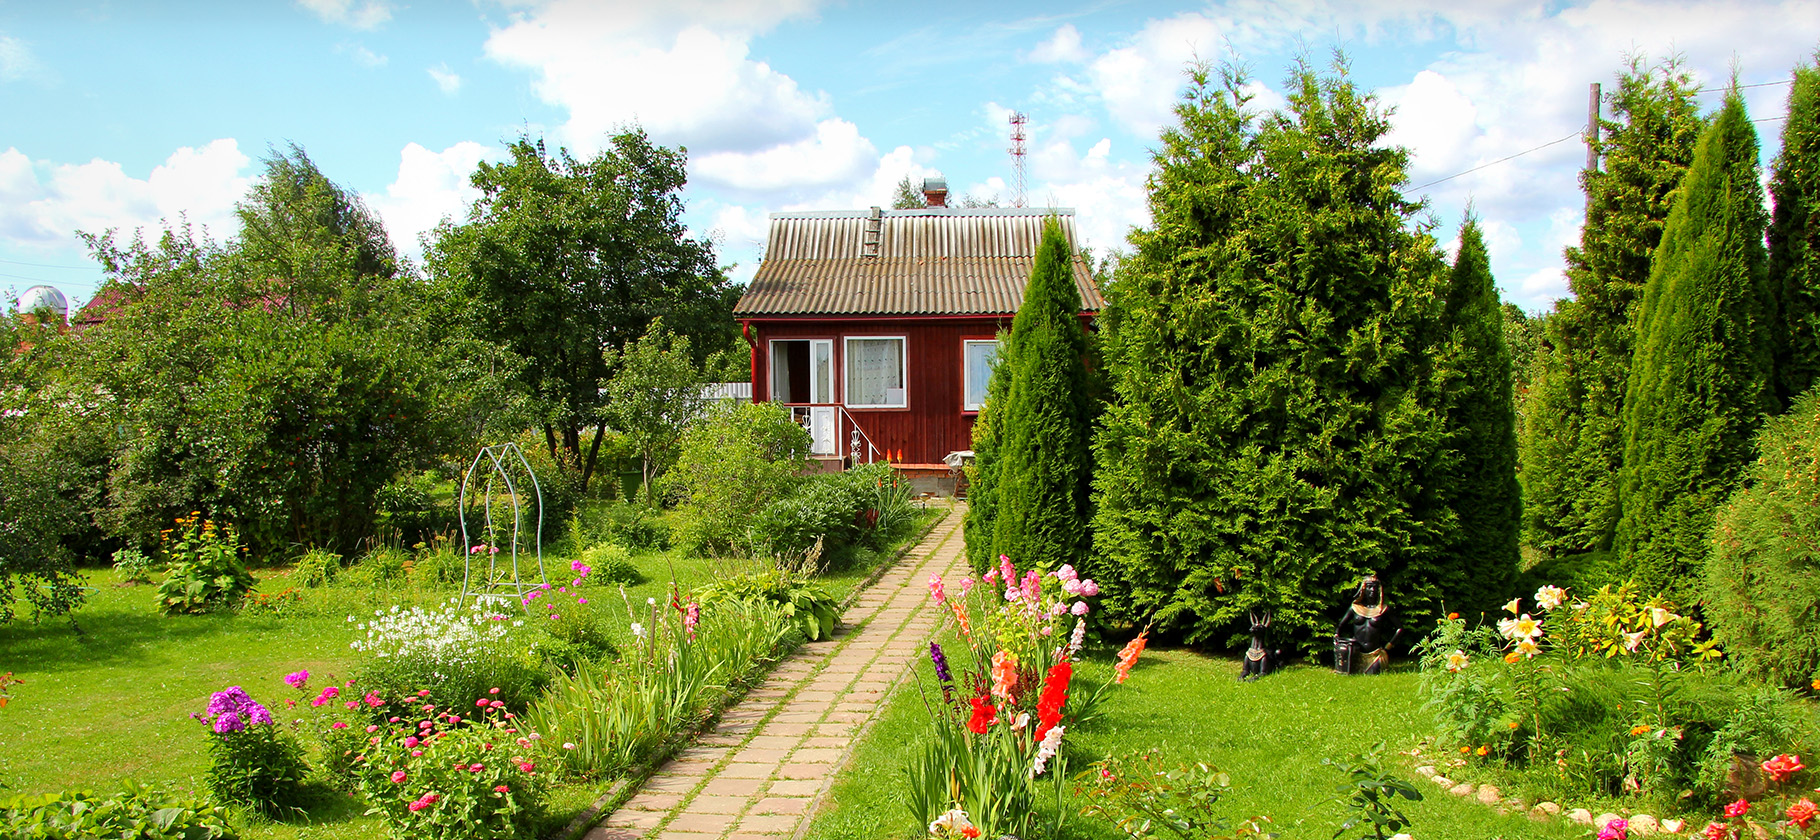 Как купить дачу или загородный дом: пошаговая инструкция